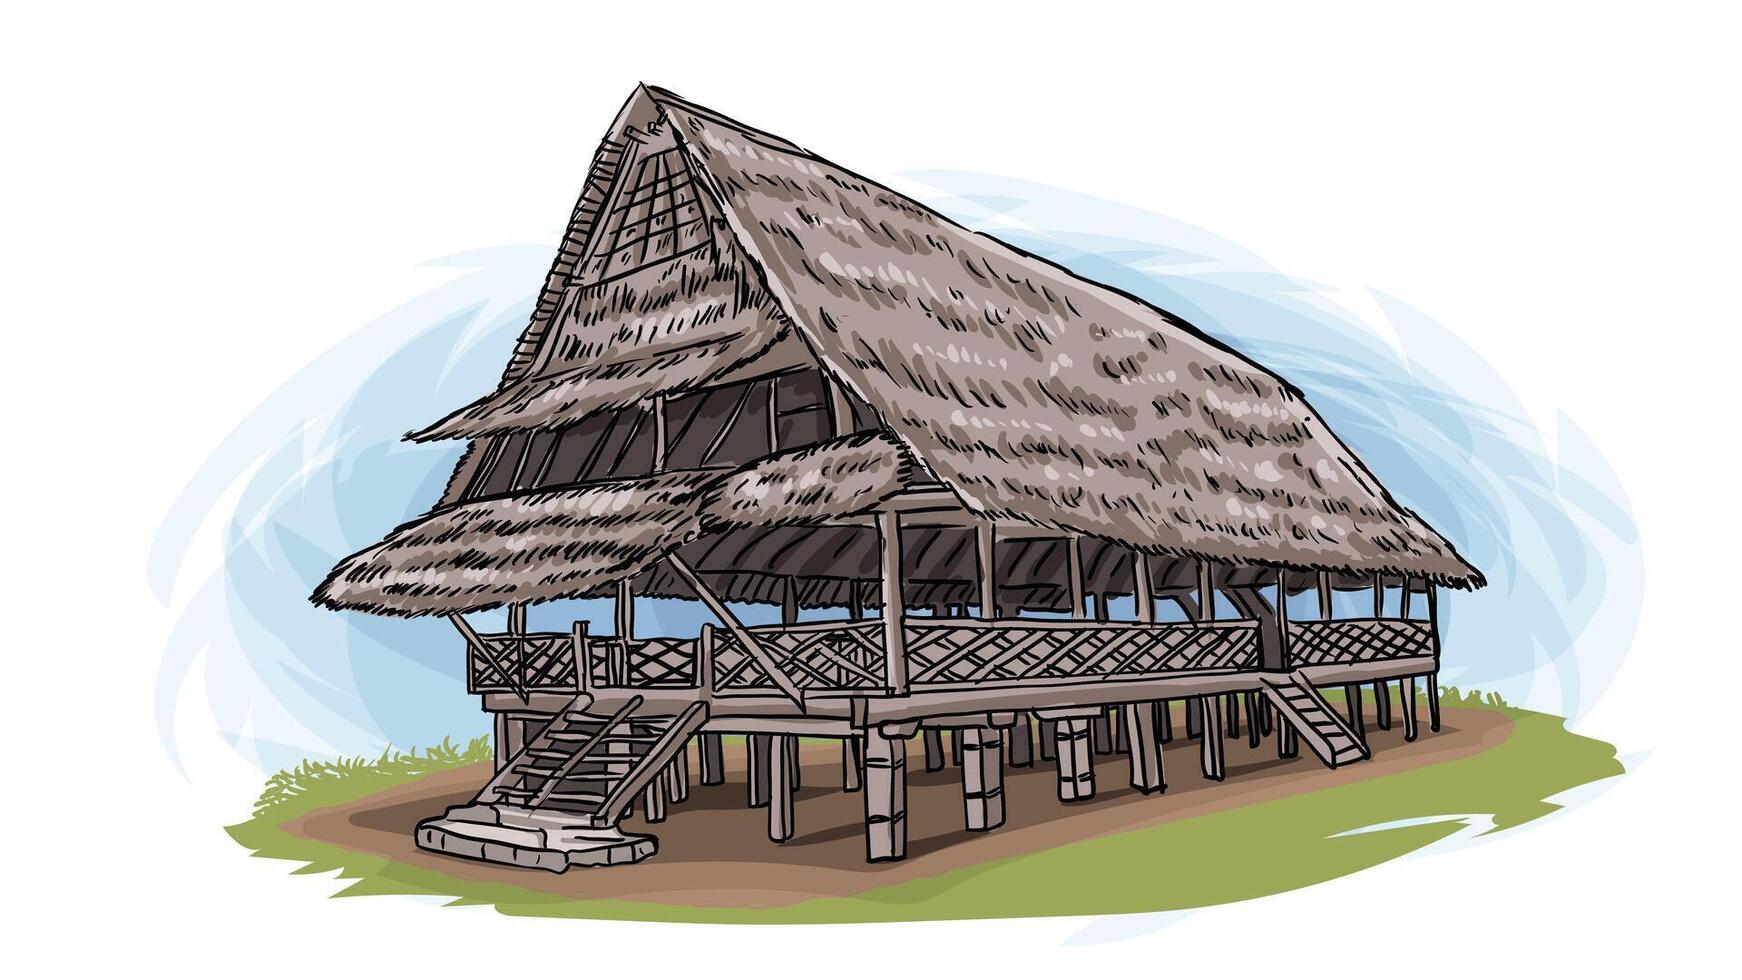 Rumah baileo traditionnel maison de maluku Indonésie dessin animé main tiré illustration vecteur